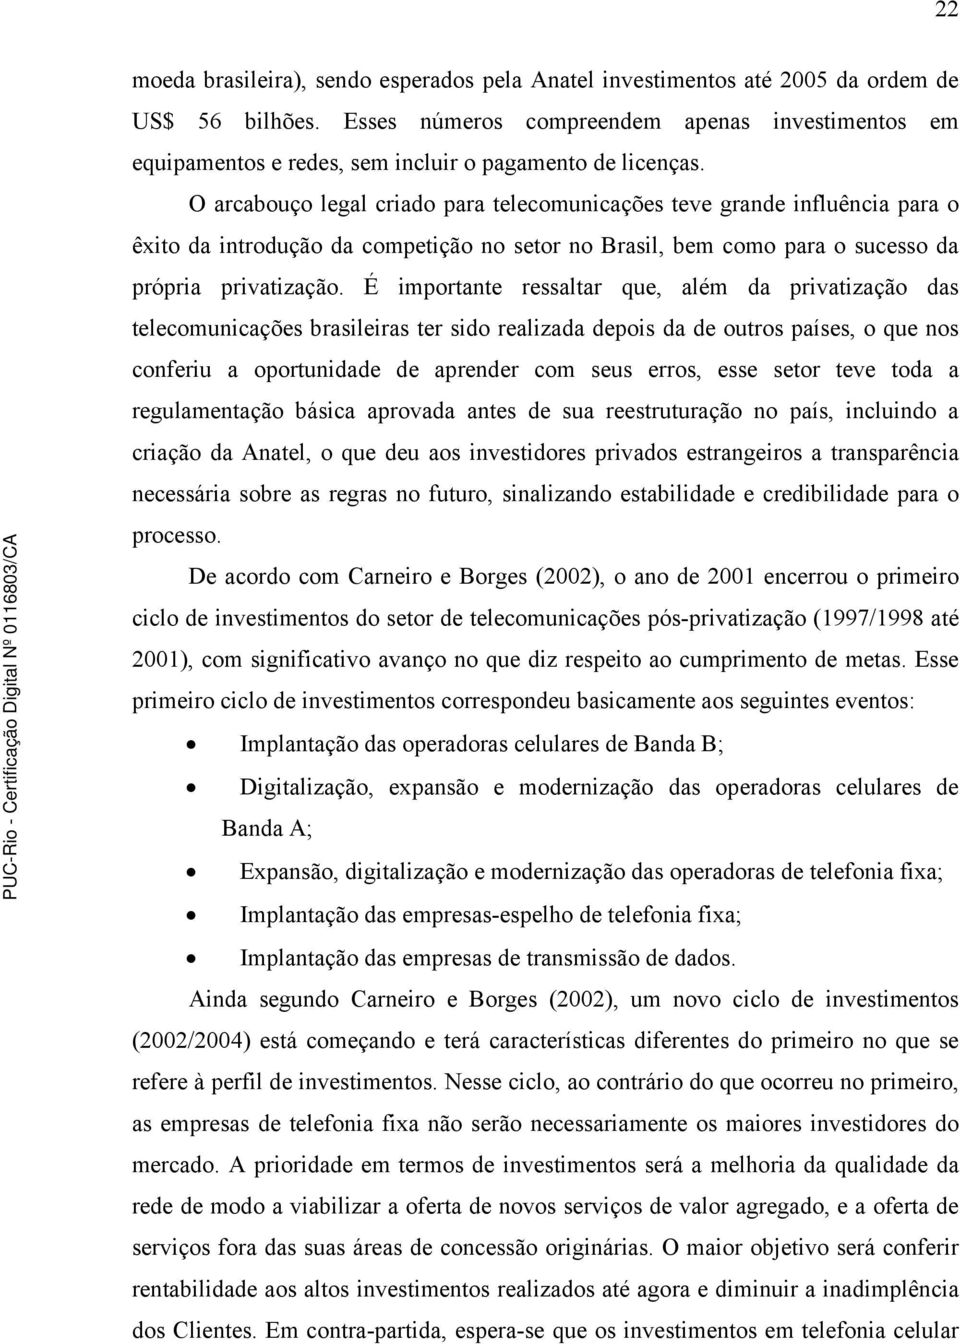 O arcabouço legal criado para telecomunicações teve grande influência para o êxito da introdução da competição no setor no Brasil, bem como para o sucesso da própria privatização.